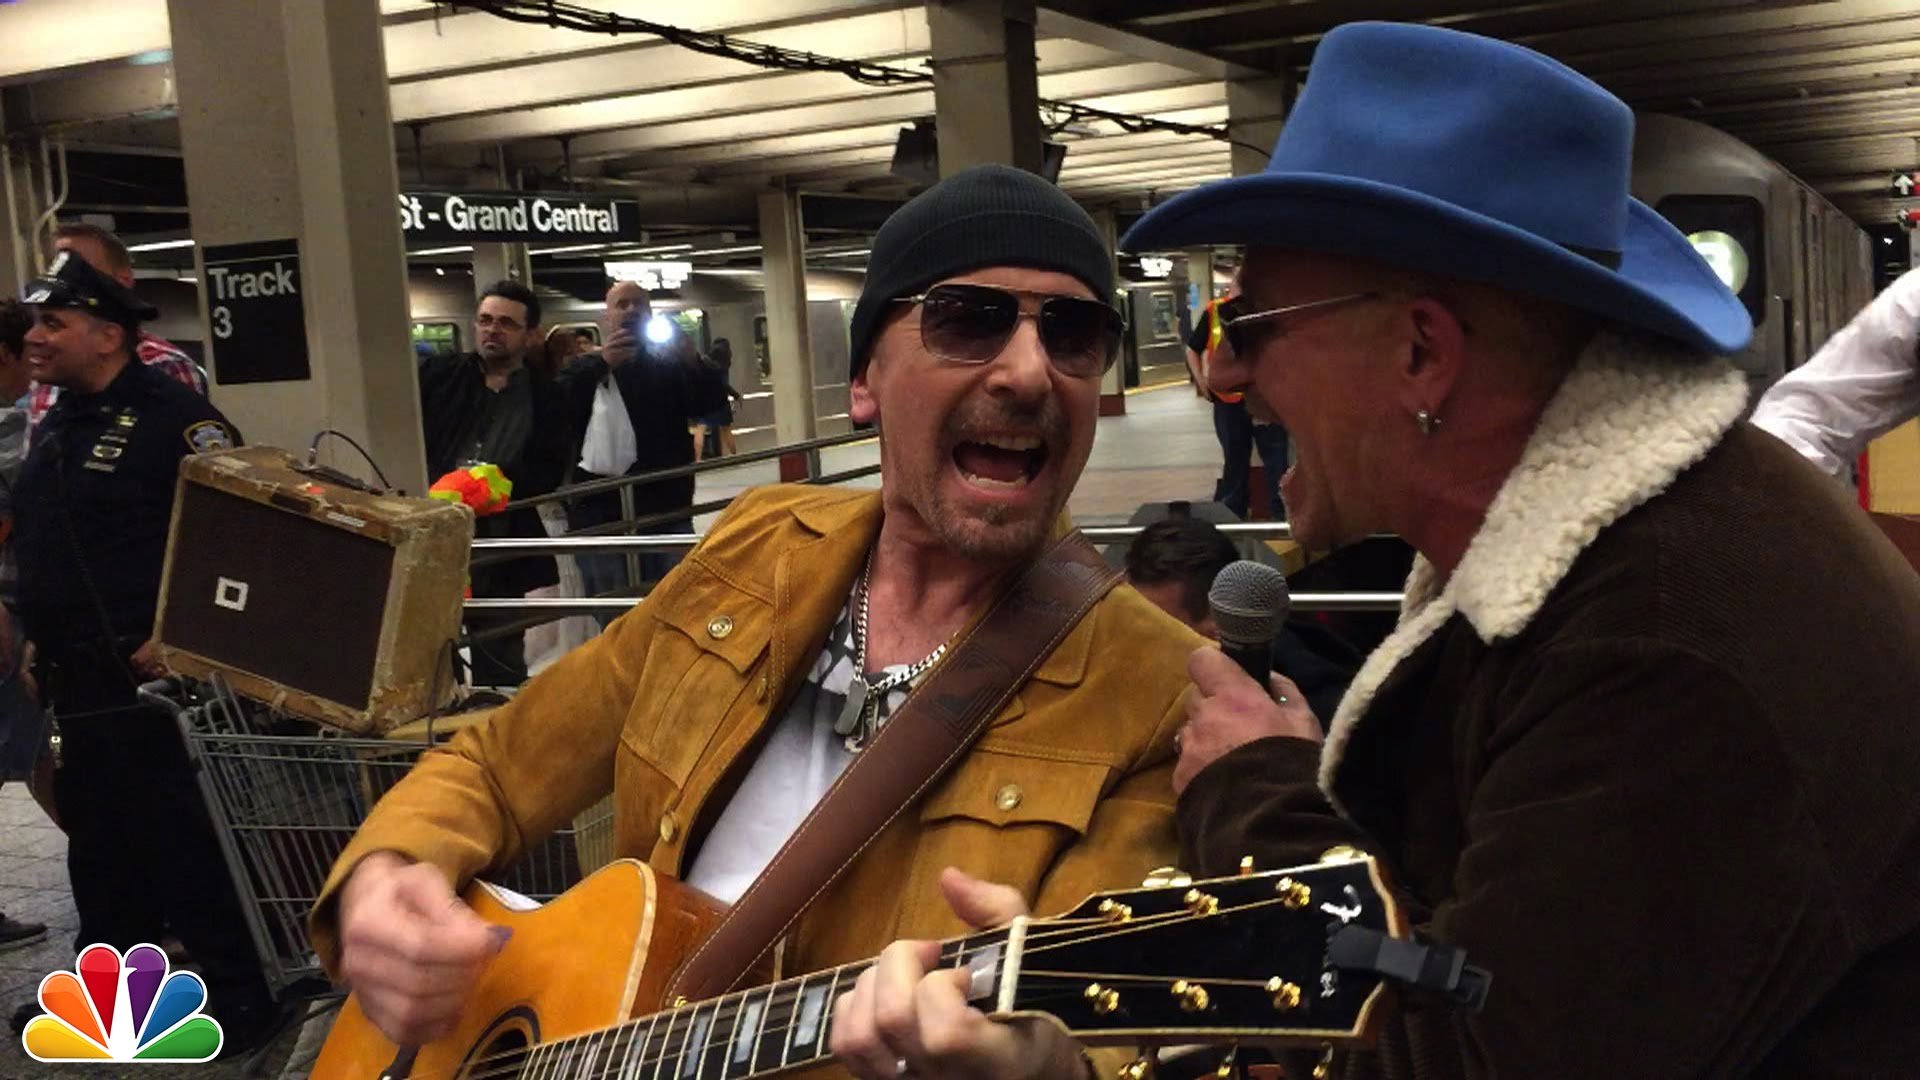 Οι U2 παίζουν μεταμφιεσμένοι στο μετρό της Νέας Υόρκης. Μέχρι που…